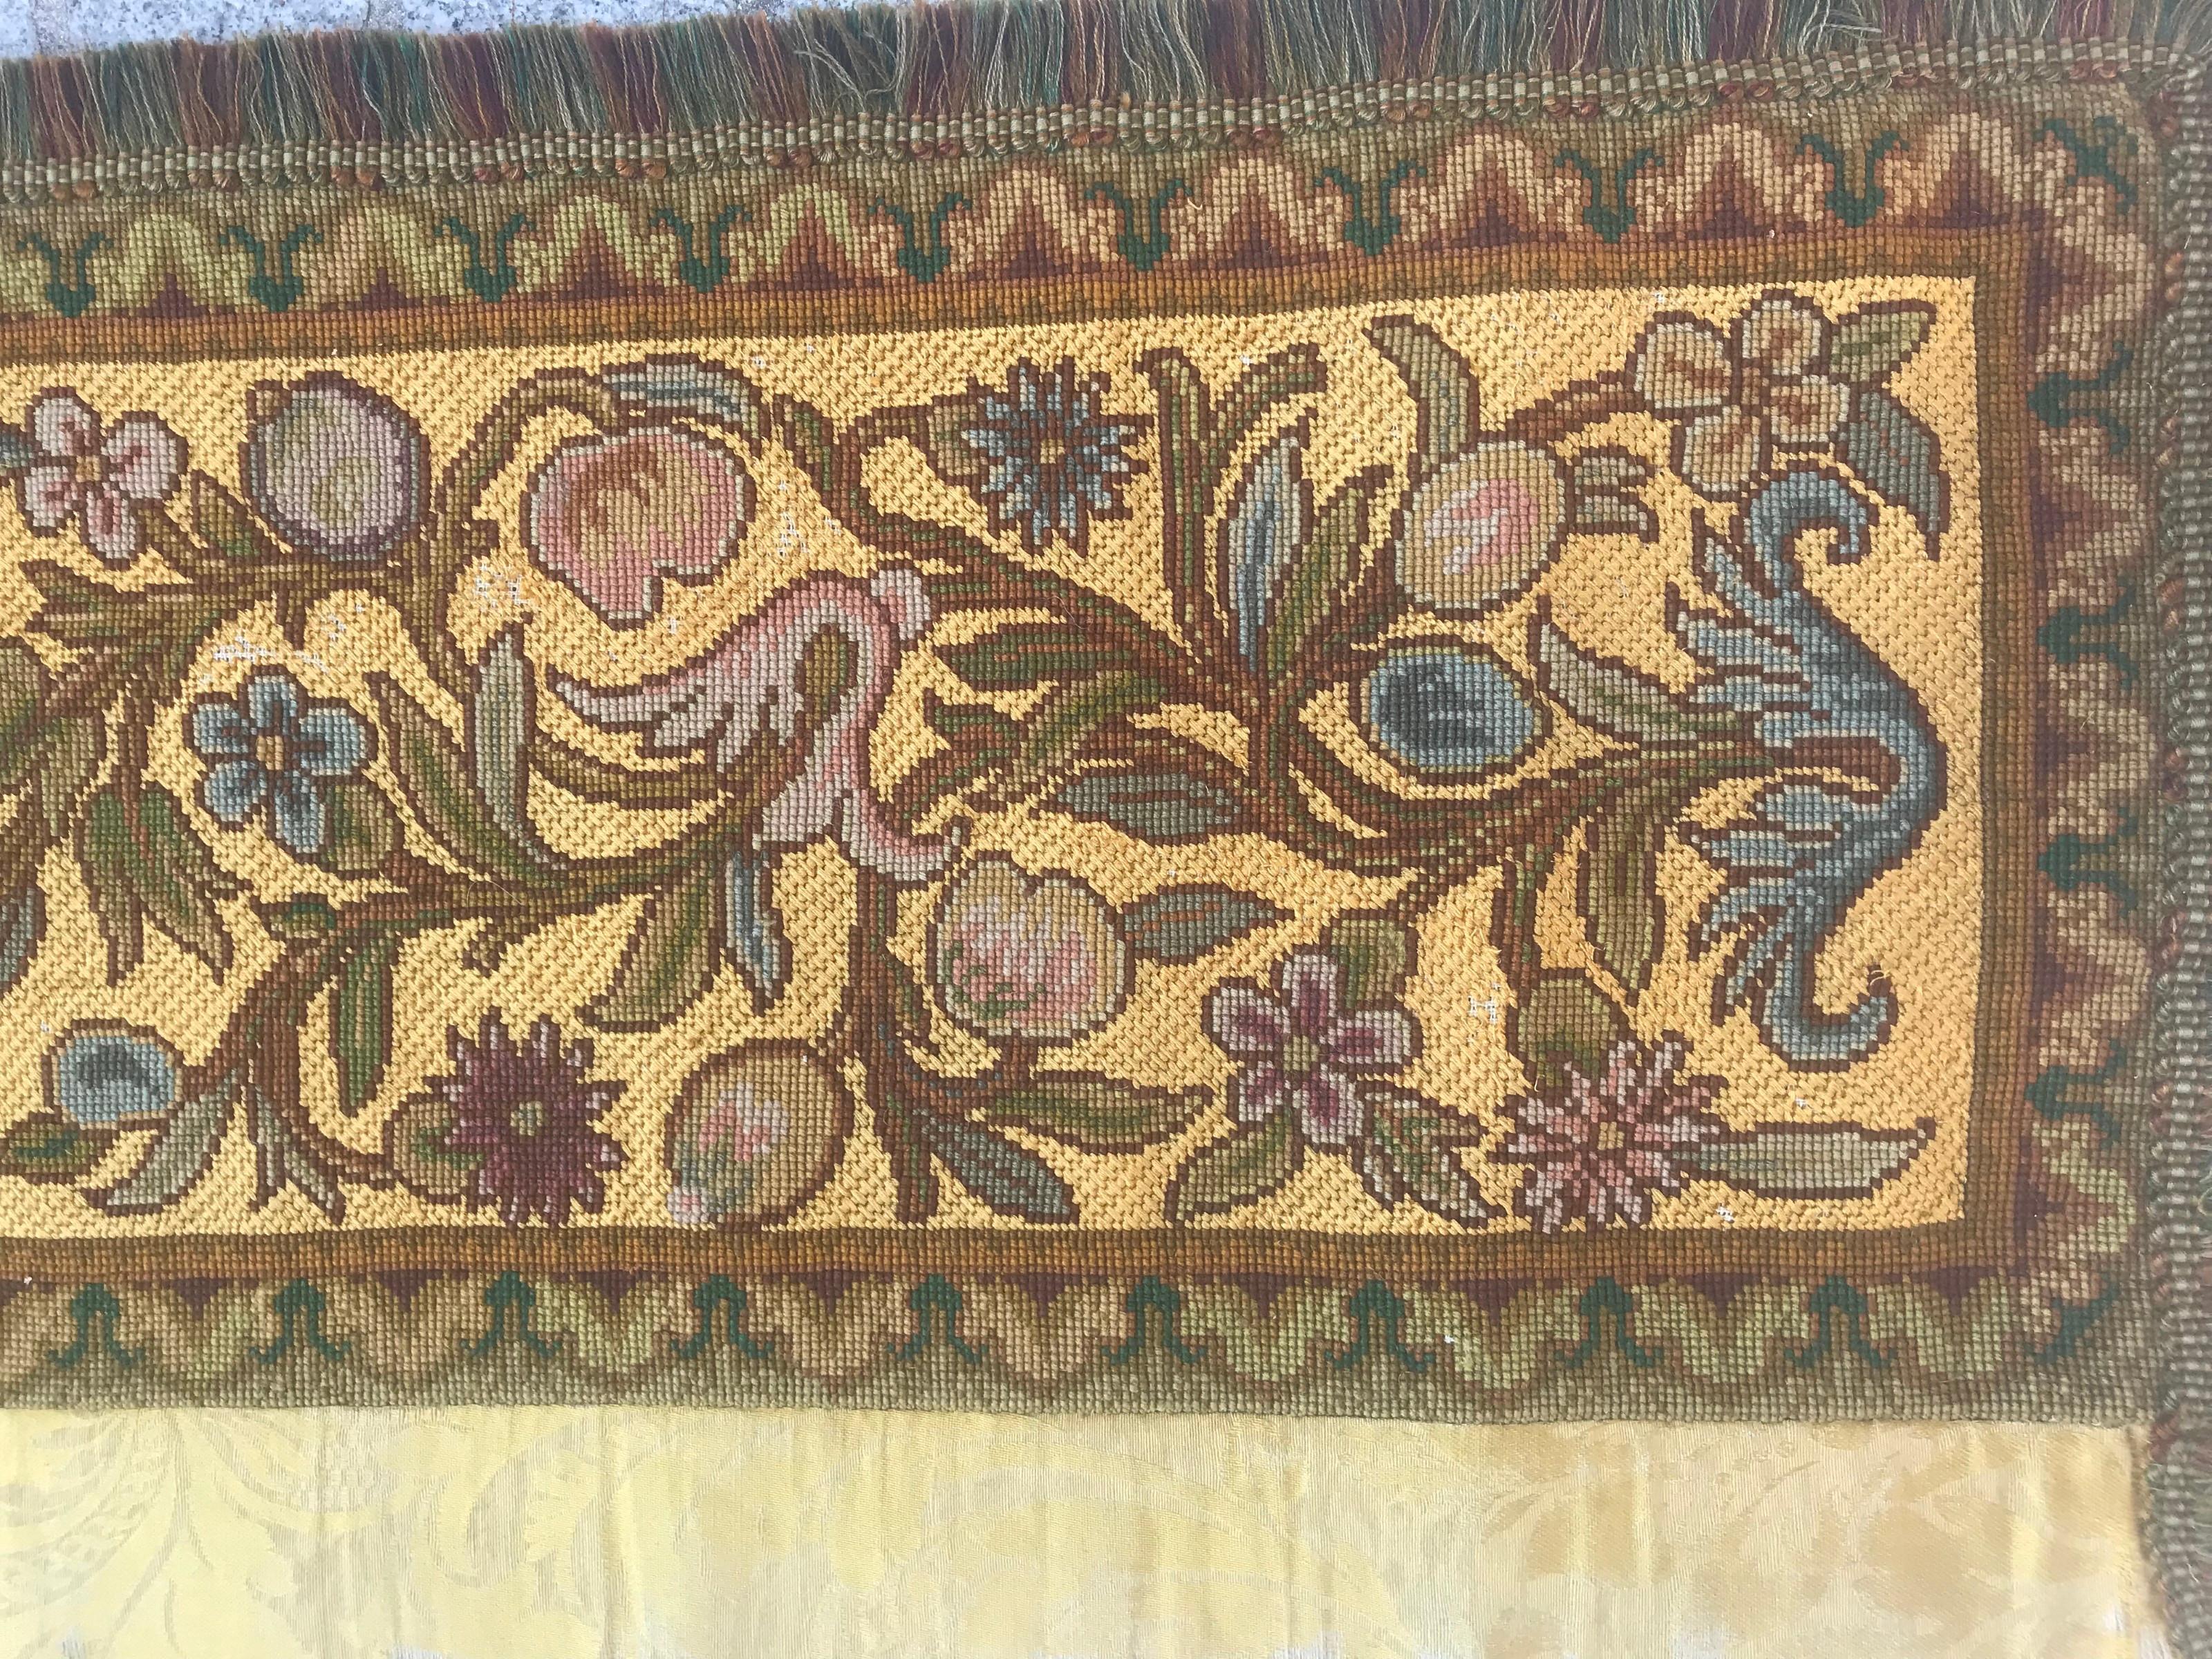 Belle tapisserie française de la fin du 19e siècle avec un beau motif floral, Napoléon III, entièrement brodée à la main avec de la soie et de la laine sur un fond de coton.

✨✨✨
